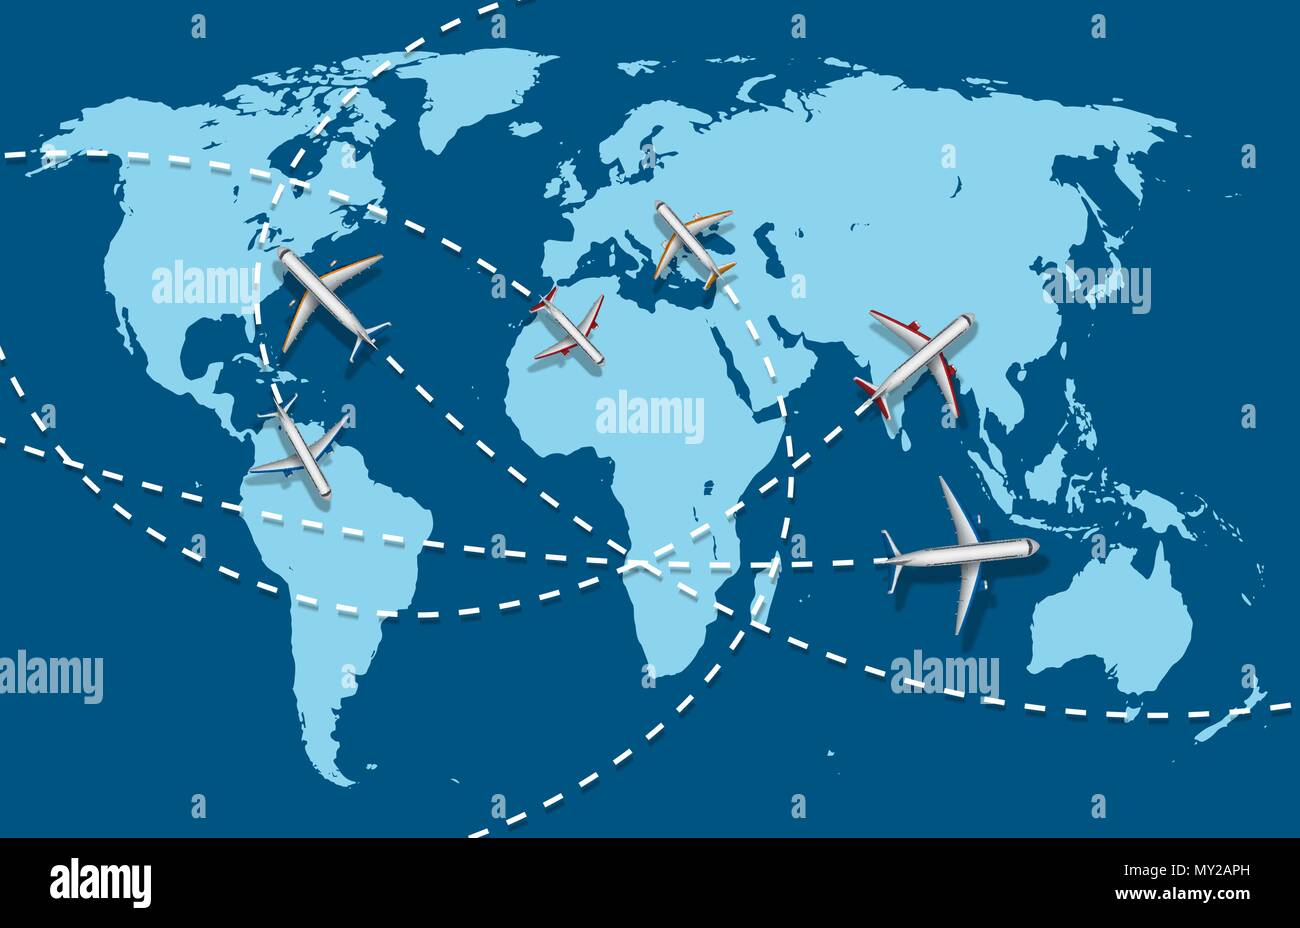 Geschäftsreise Banner mit Flugzeug- und Weltkarte Hintergrund. infografik Welt destination Travel Concept. Vector Illustration Stock Vektor